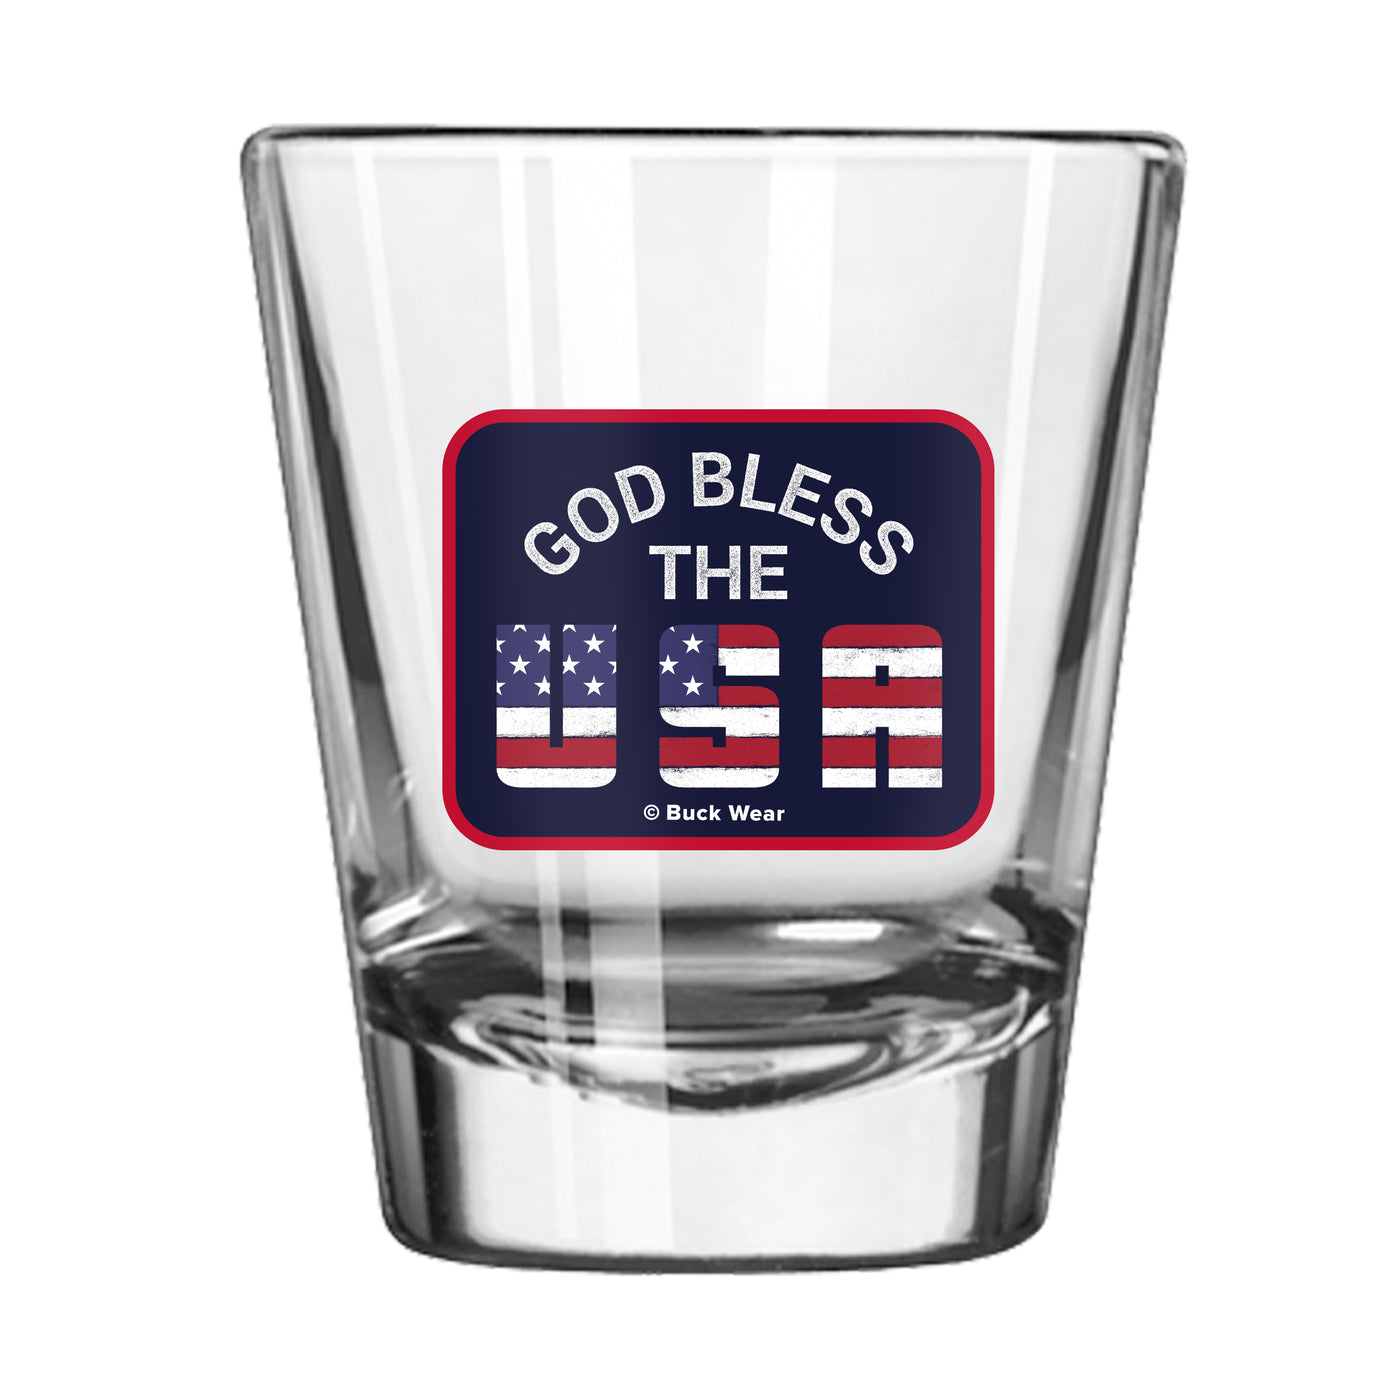 Bless The U.S. 2oz Shot Glass